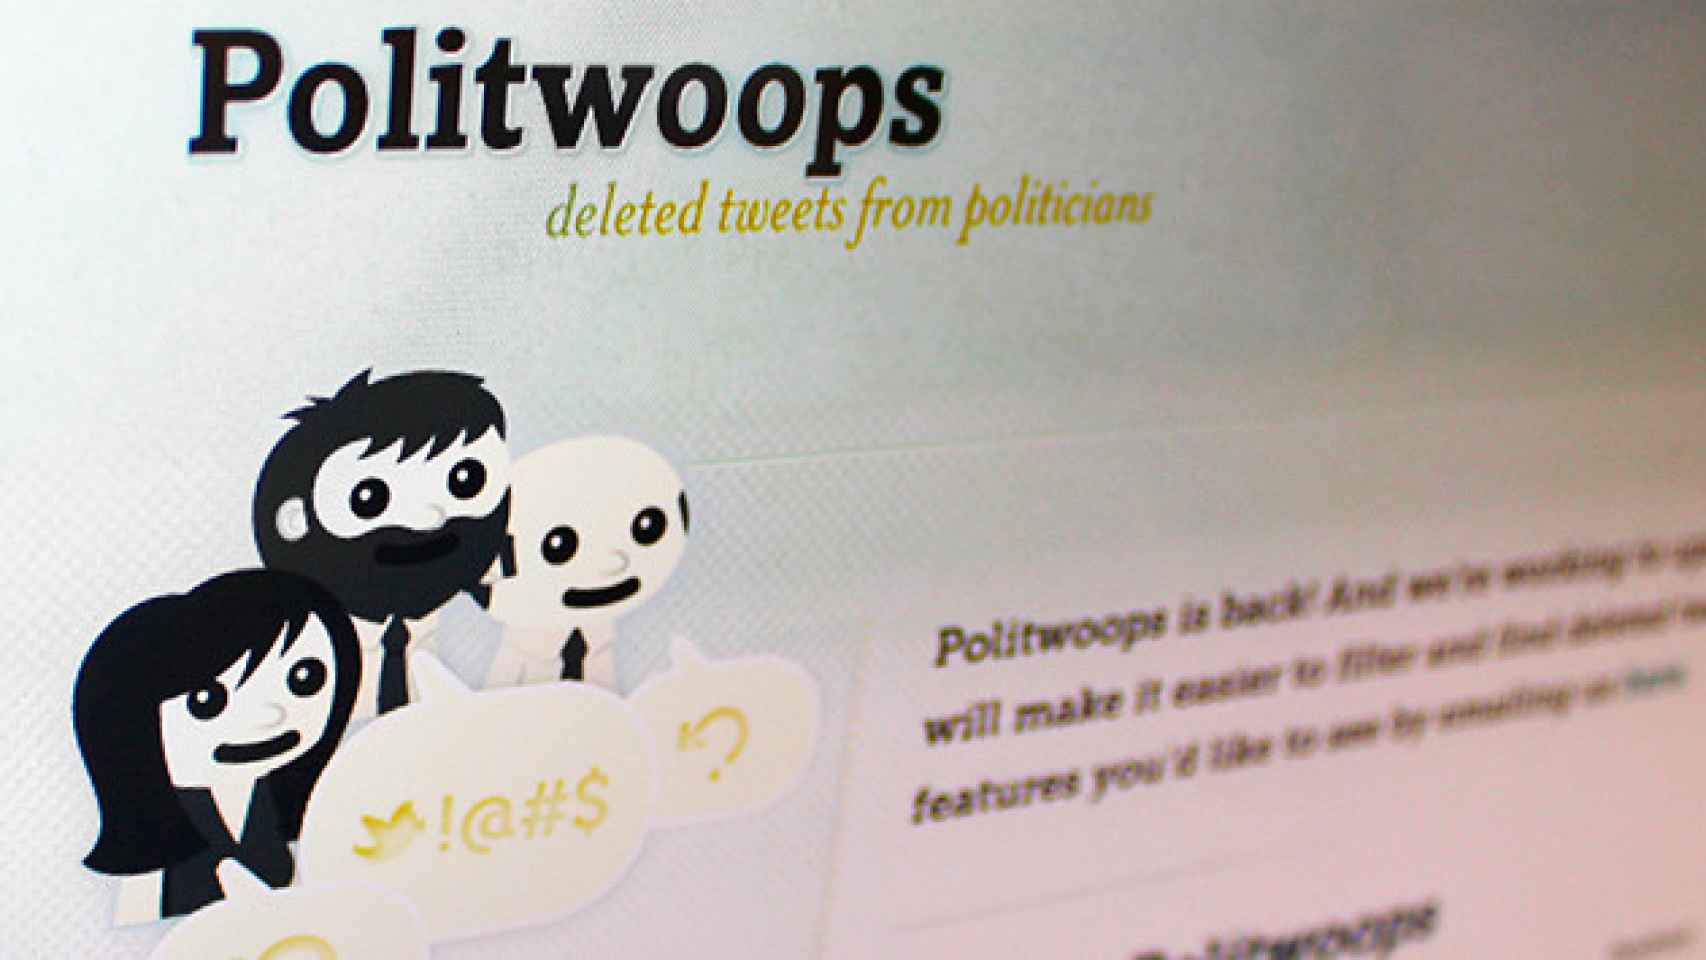 Captura de la página web Politwoops / CG